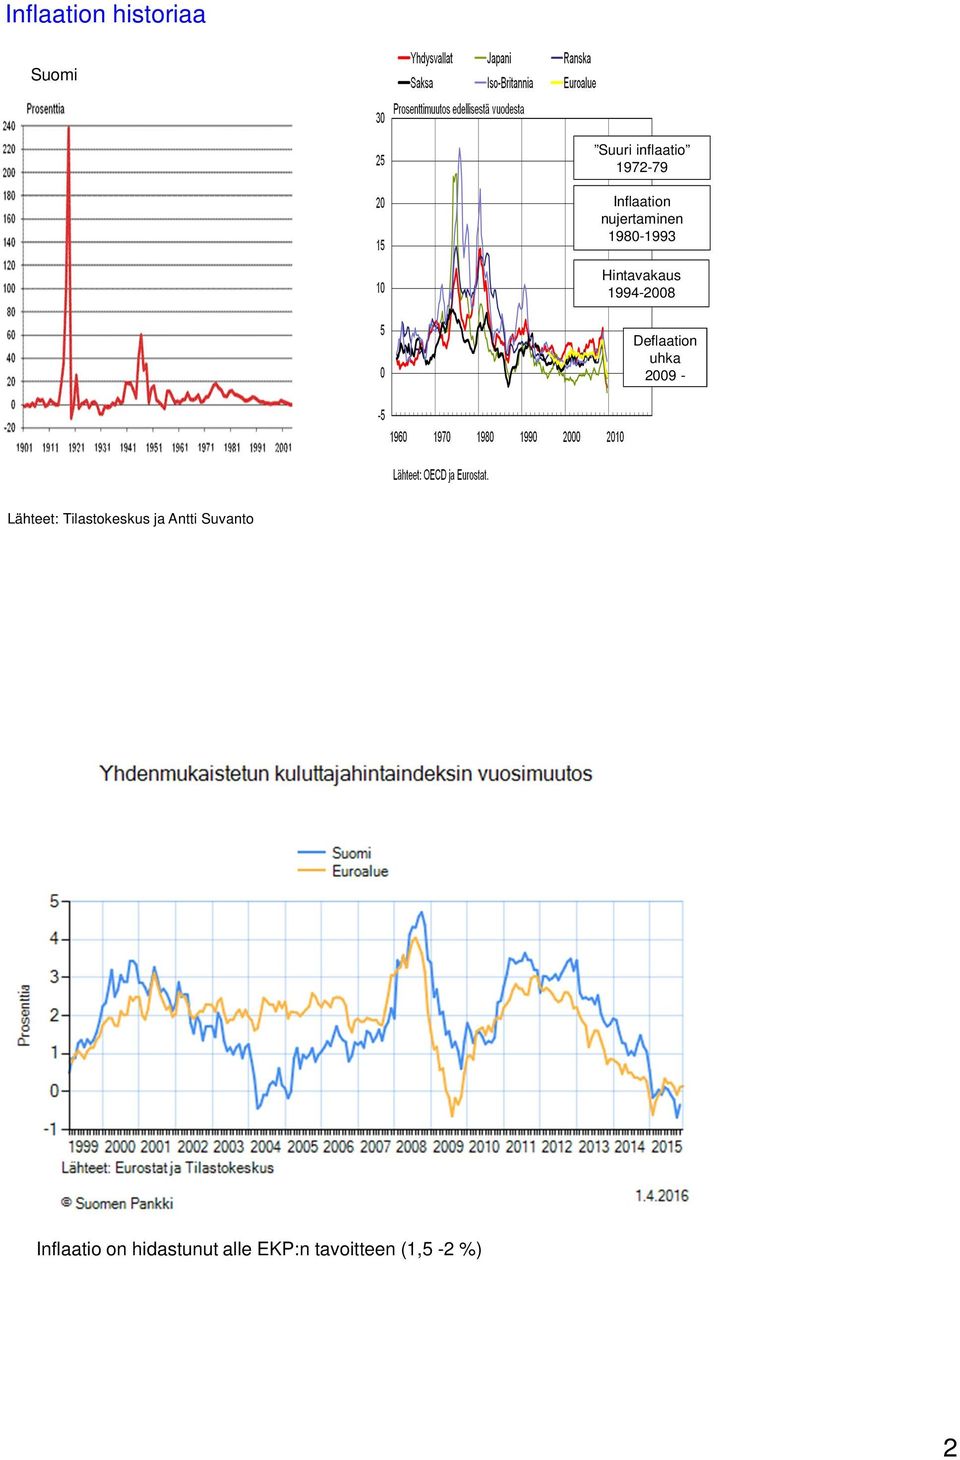 Deflaation uhka 2009 - Lähteet: Tilastokeskus ja Antti